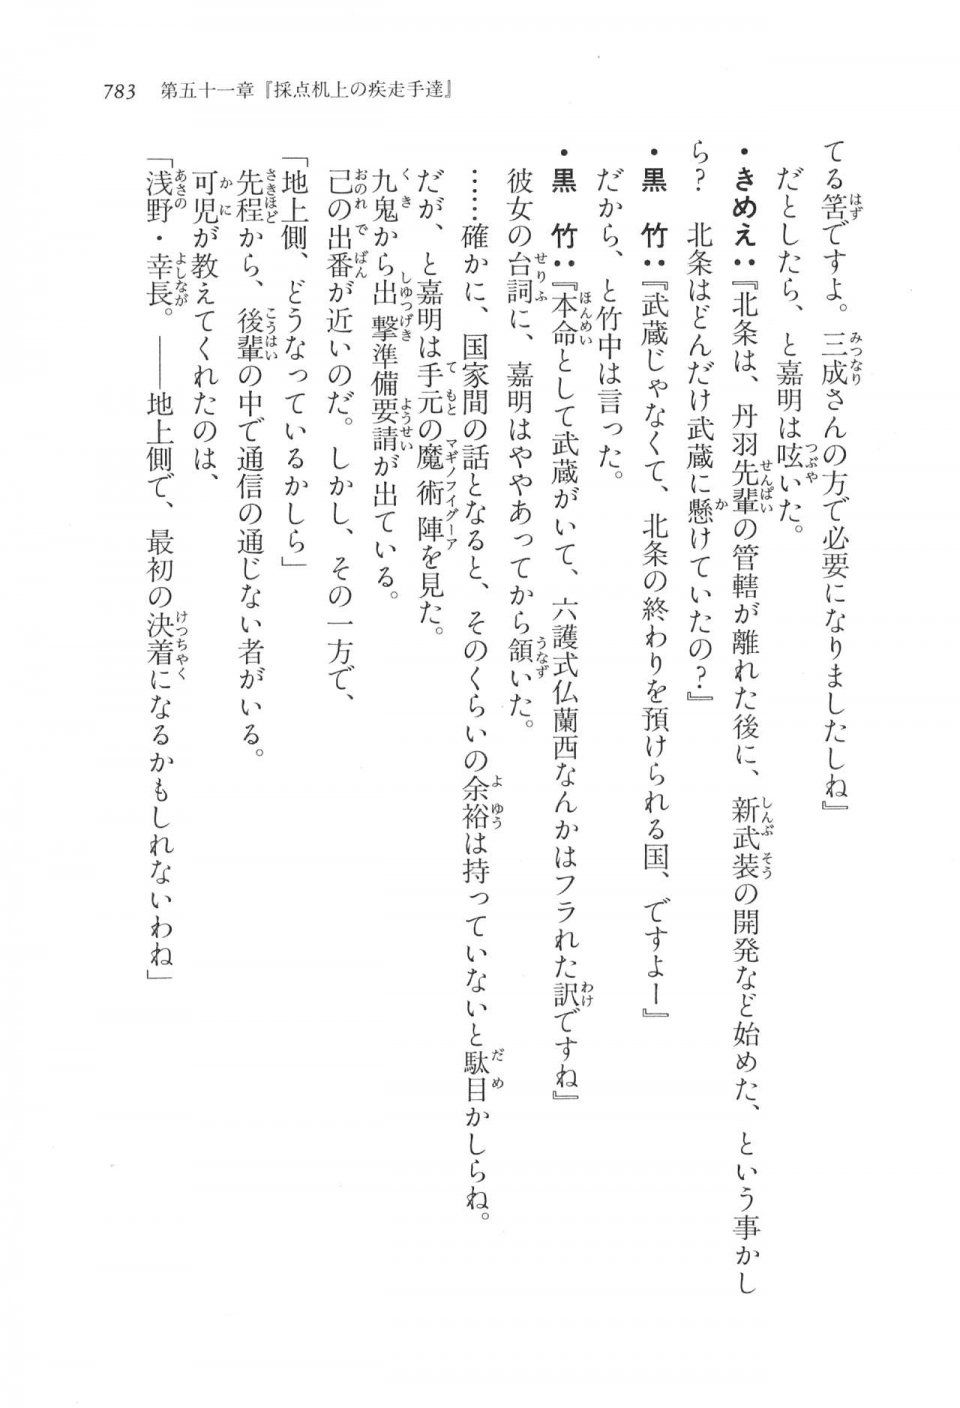 Kyoukai Senjou no Horizon LN Vol 17(7B) - Photo #785